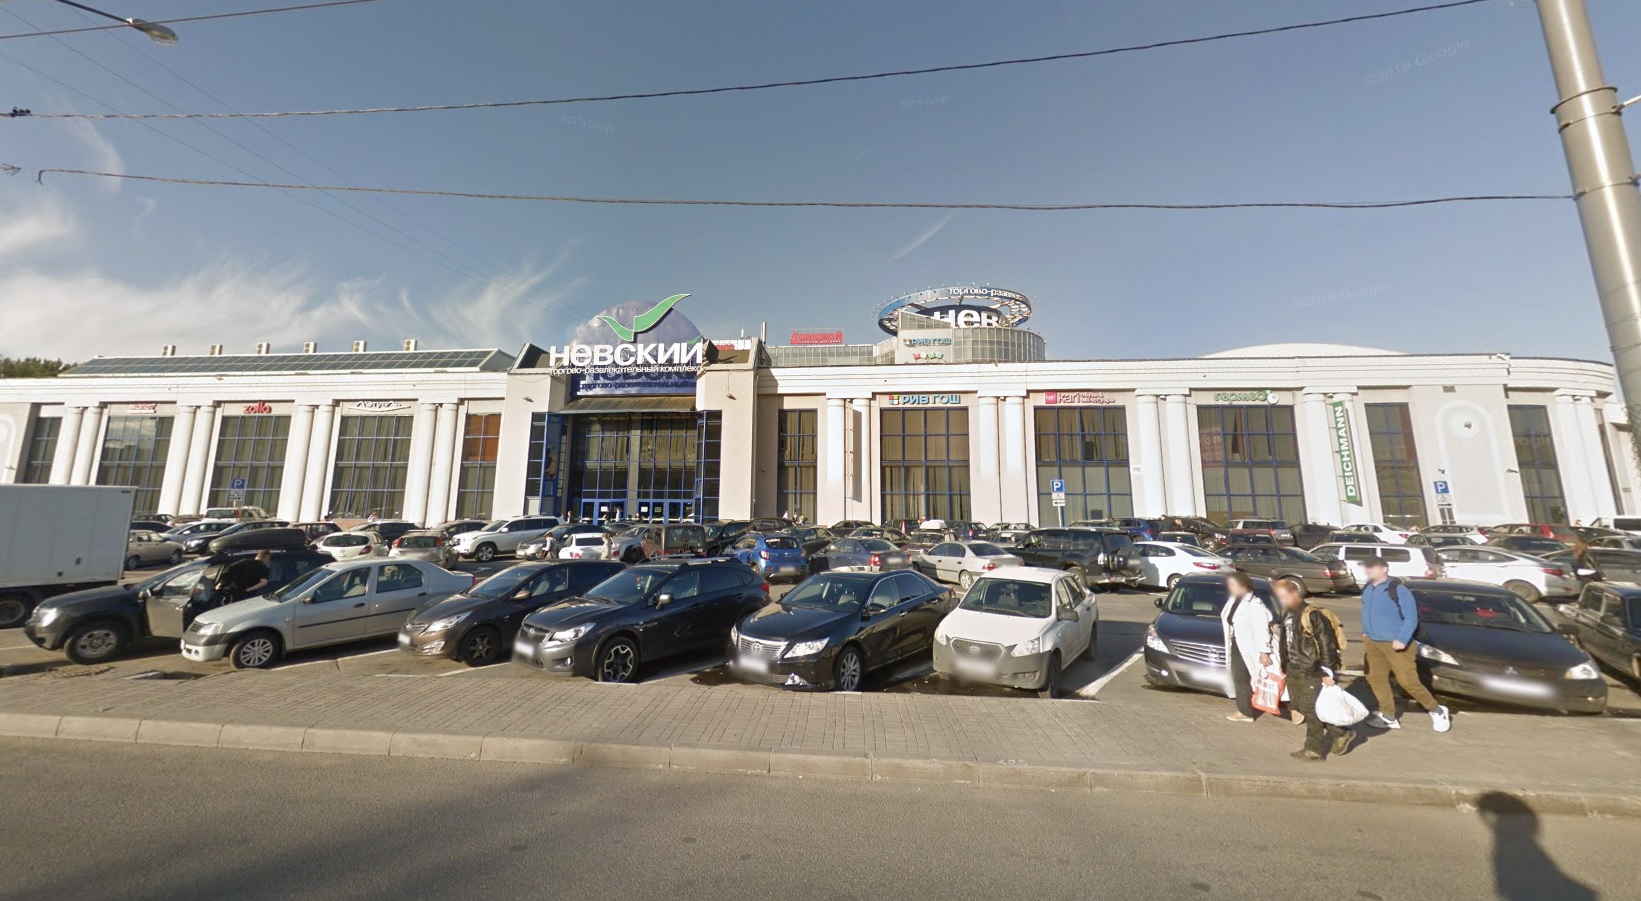 Торговый центр "Невский" в Санкт-Петербурге